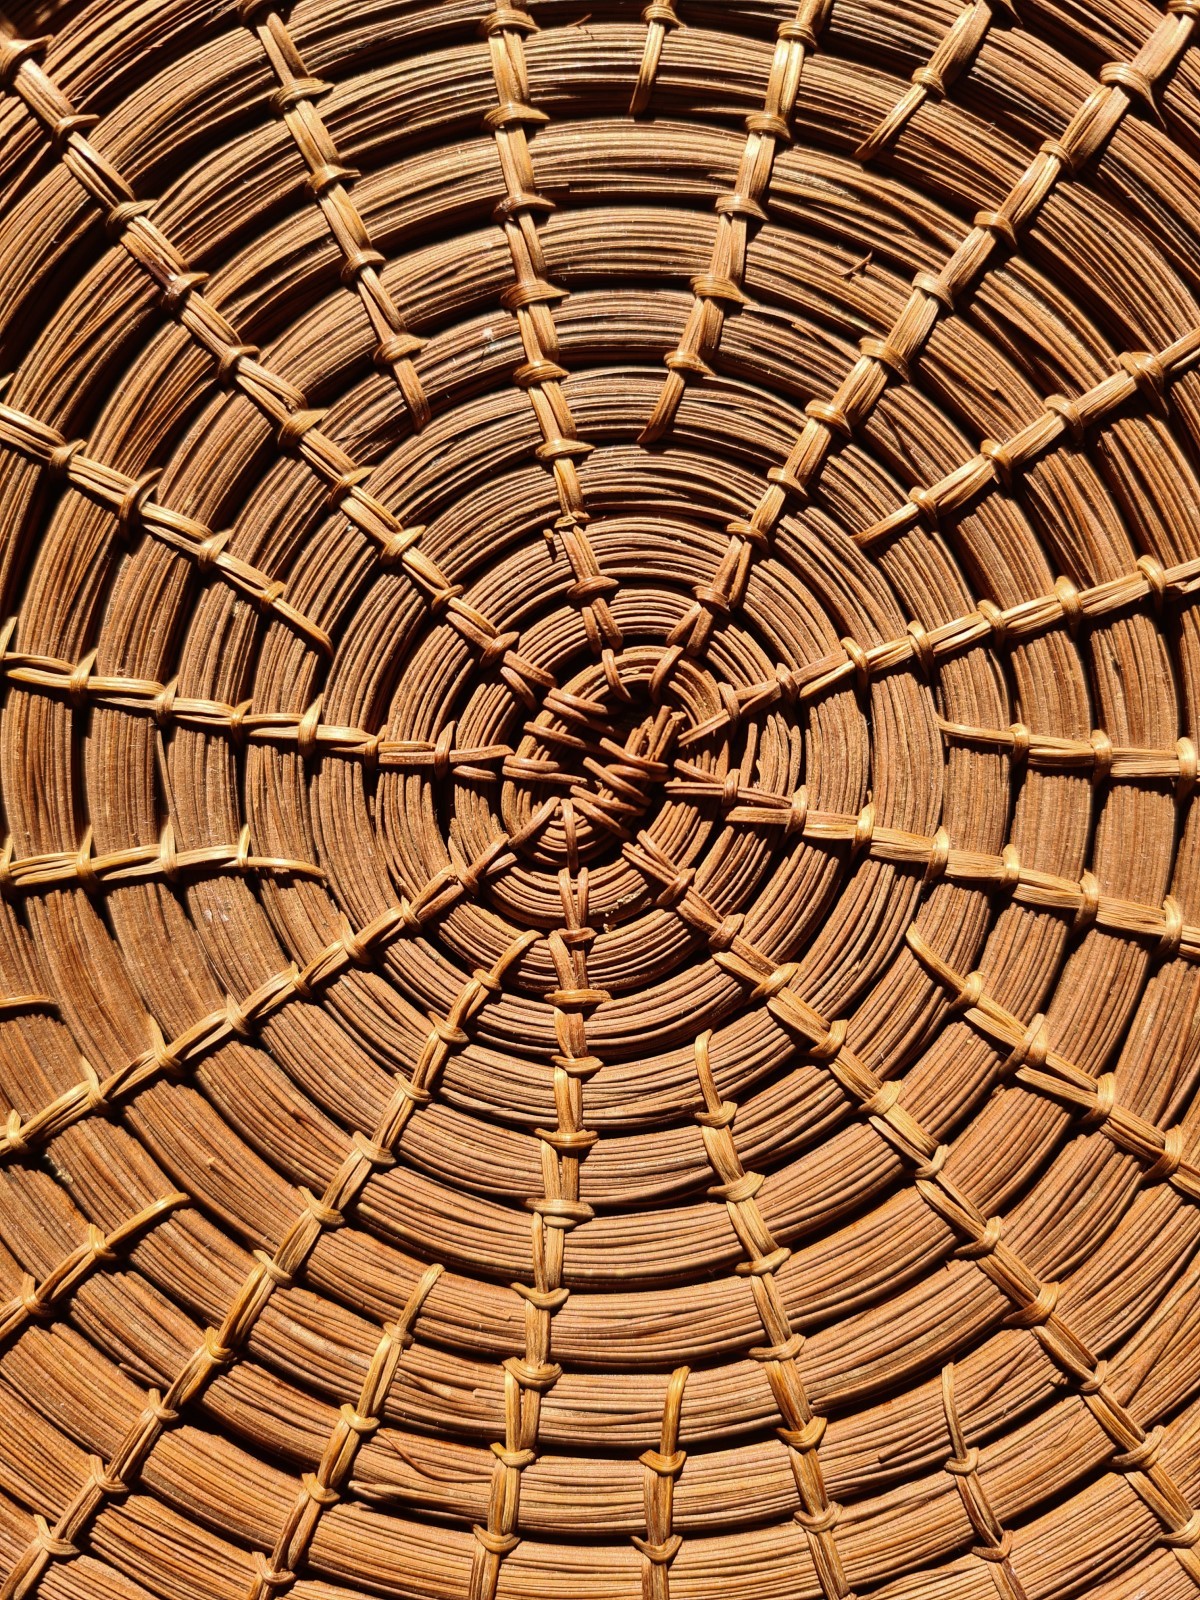 Umbigo de cestaria em formato de vitória-régia, feita de piaçava pela comunidade de Barcelos-Am (Foto: Marcelo Oséas)